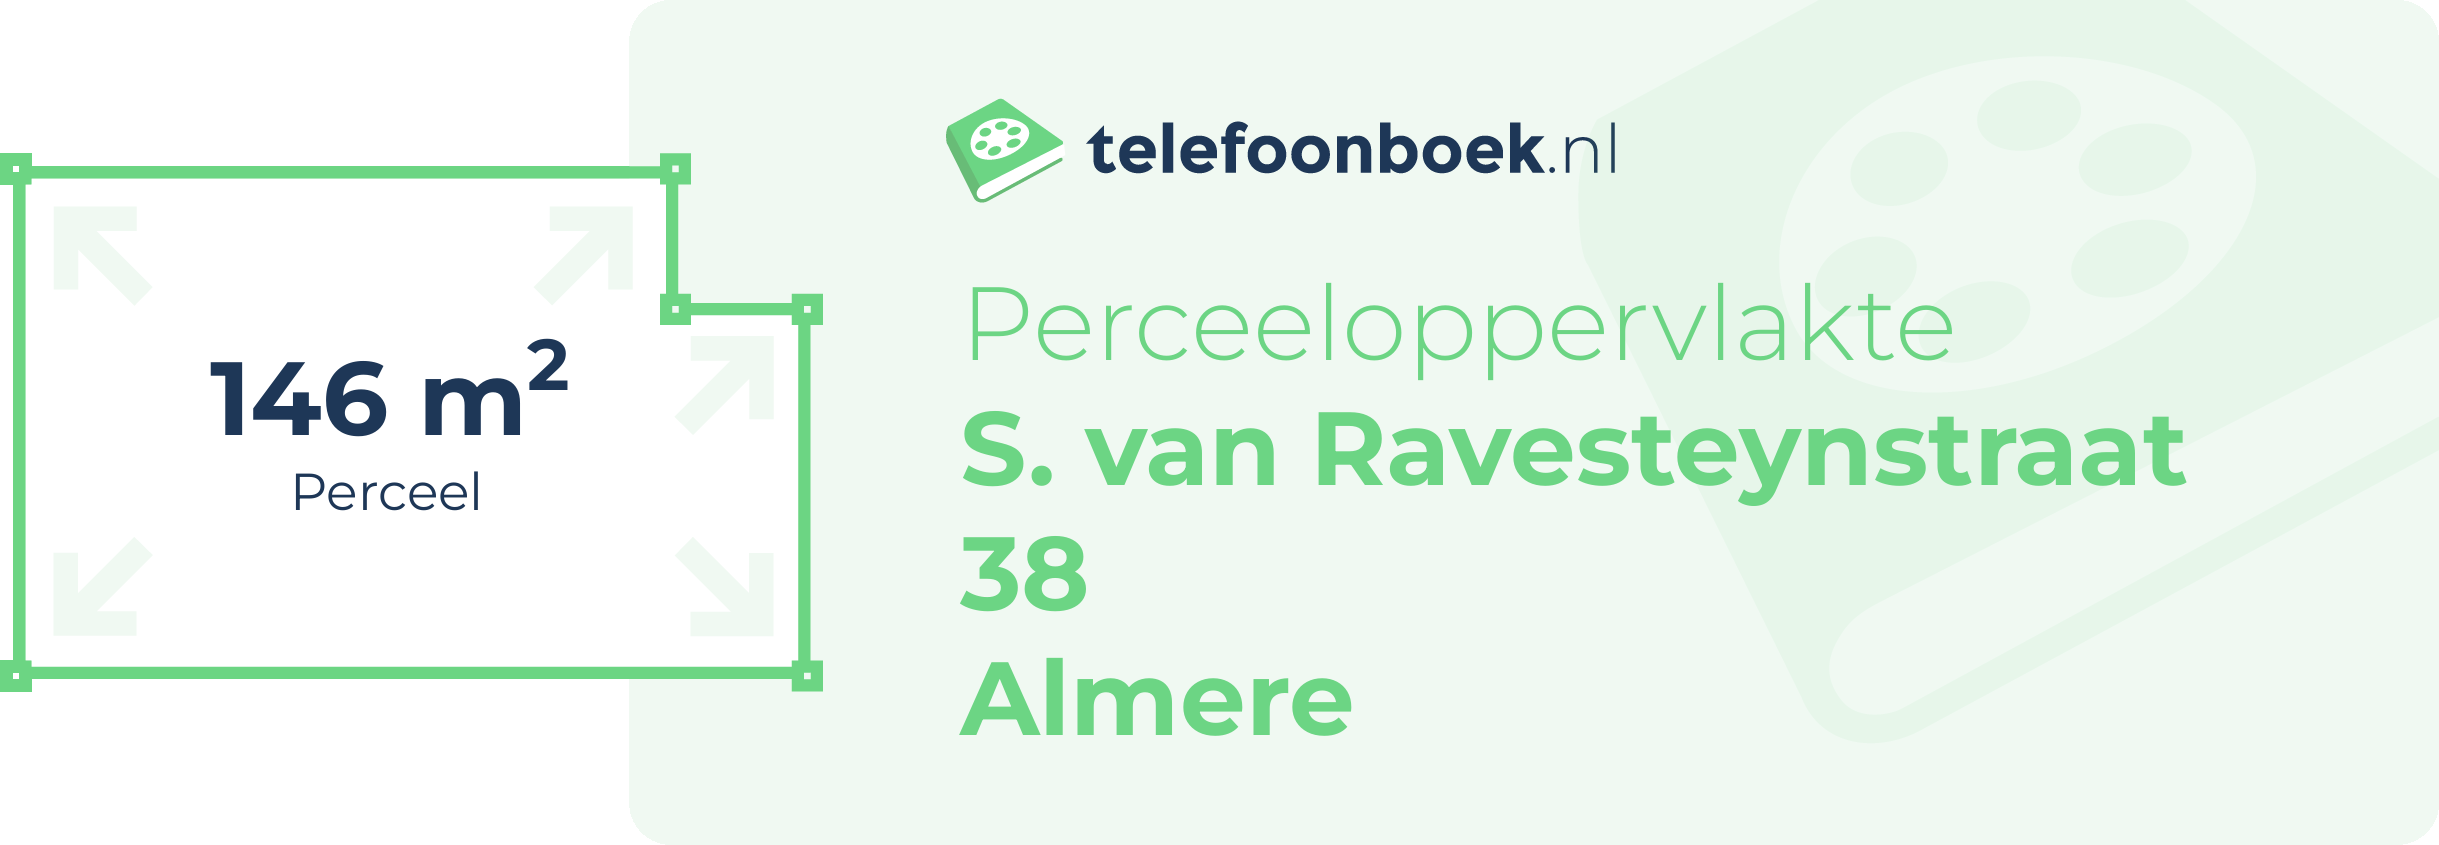 Perceeloppervlakte S. Van Ravesteynstraat 38 Almere